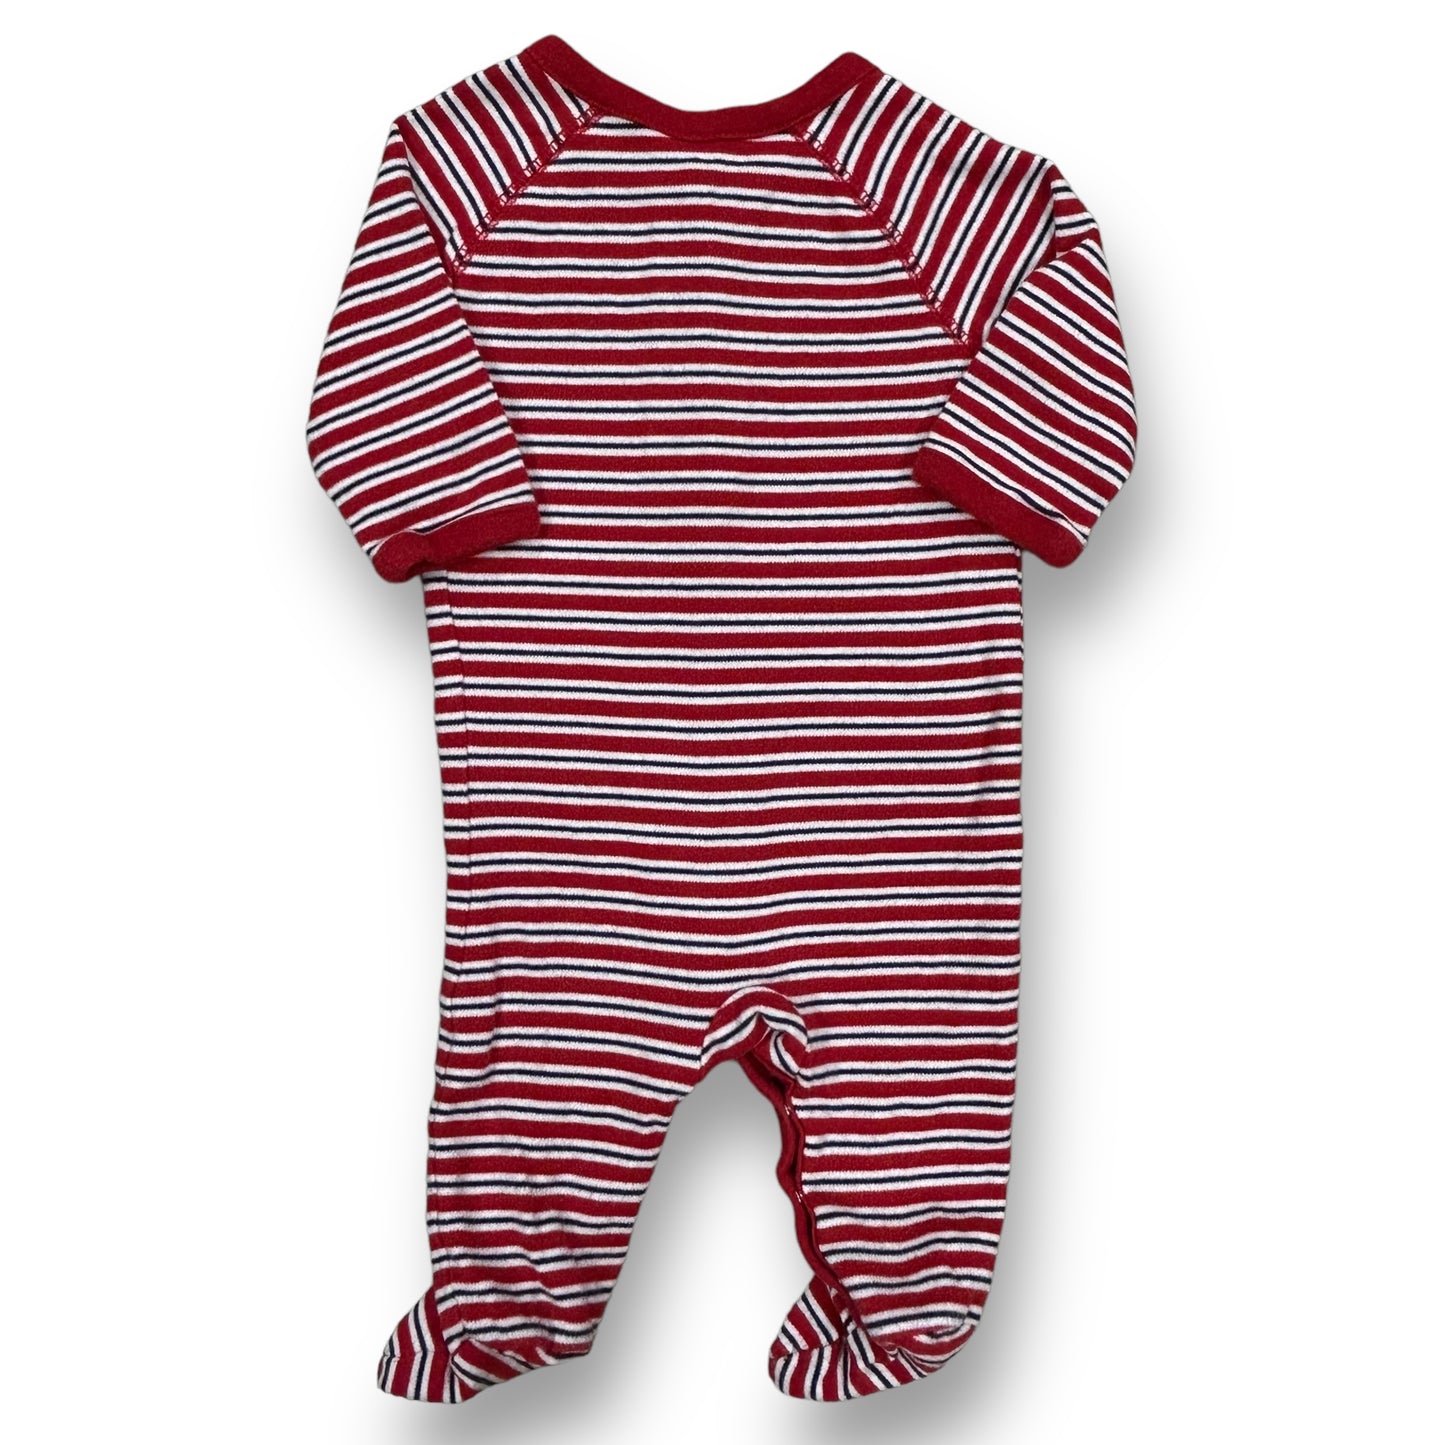 Boys Ralph Lauren Size 3 Months Red White Blue Striped Footie One-Piece